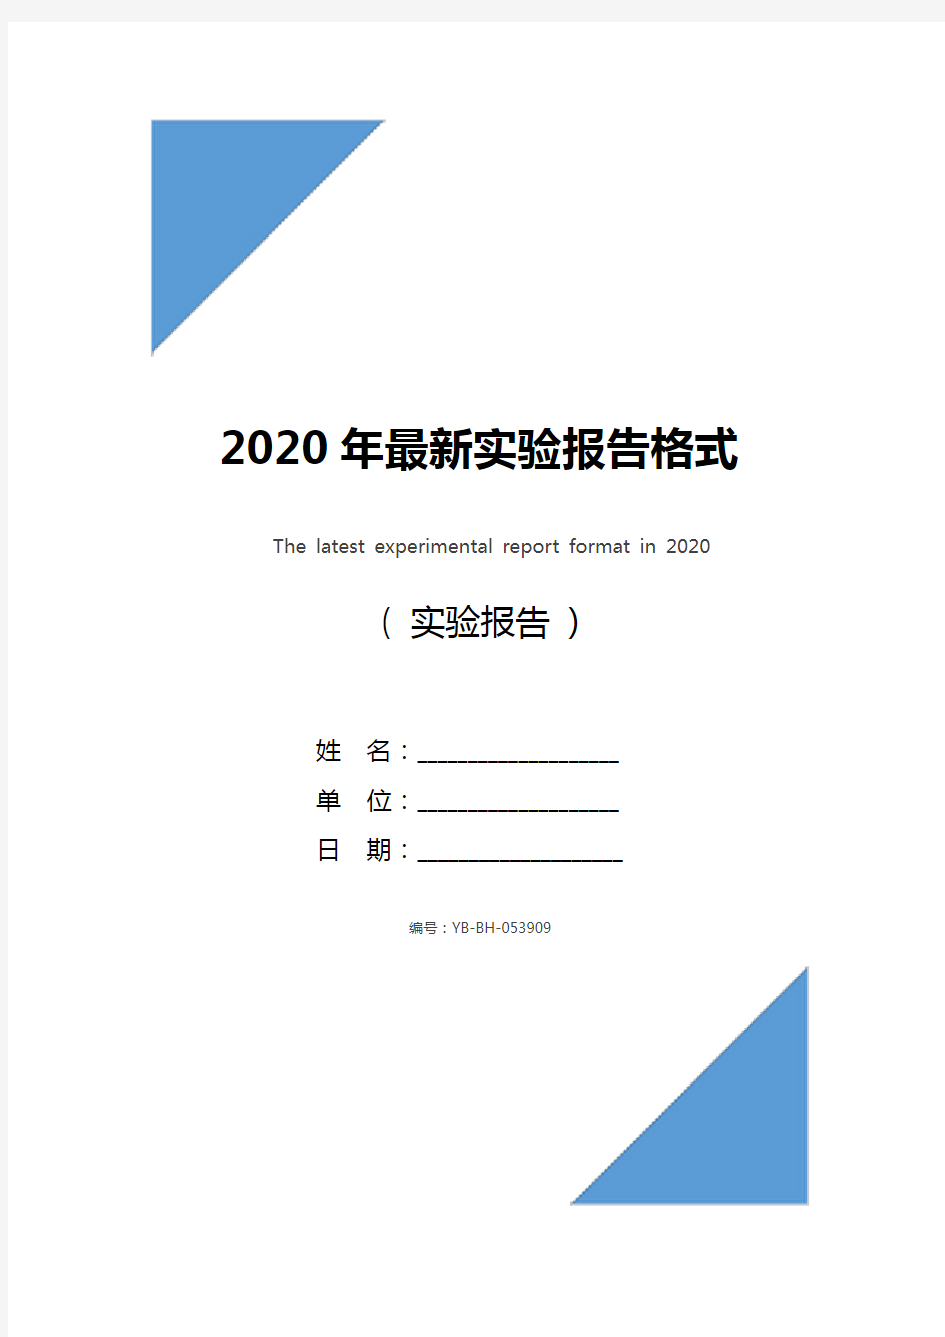 2020年最新实验报告格式